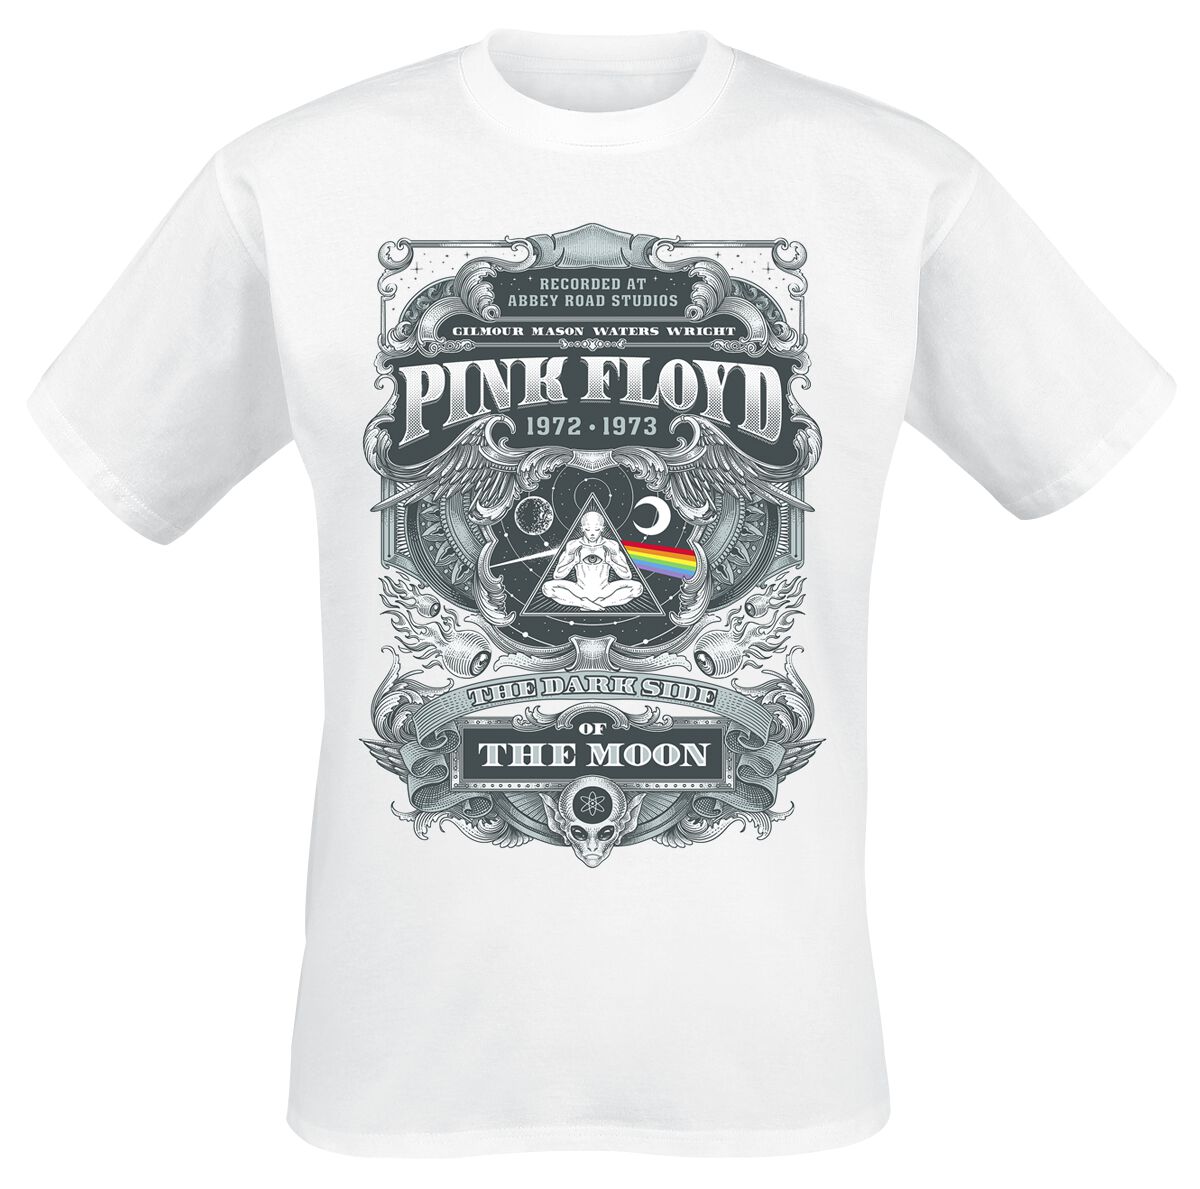 Pink Floyd T-Shirt - DSOTM 1972 - S bis 3XL - für Männer - Größe L - weiß  - Lizenziertes Merchandise!